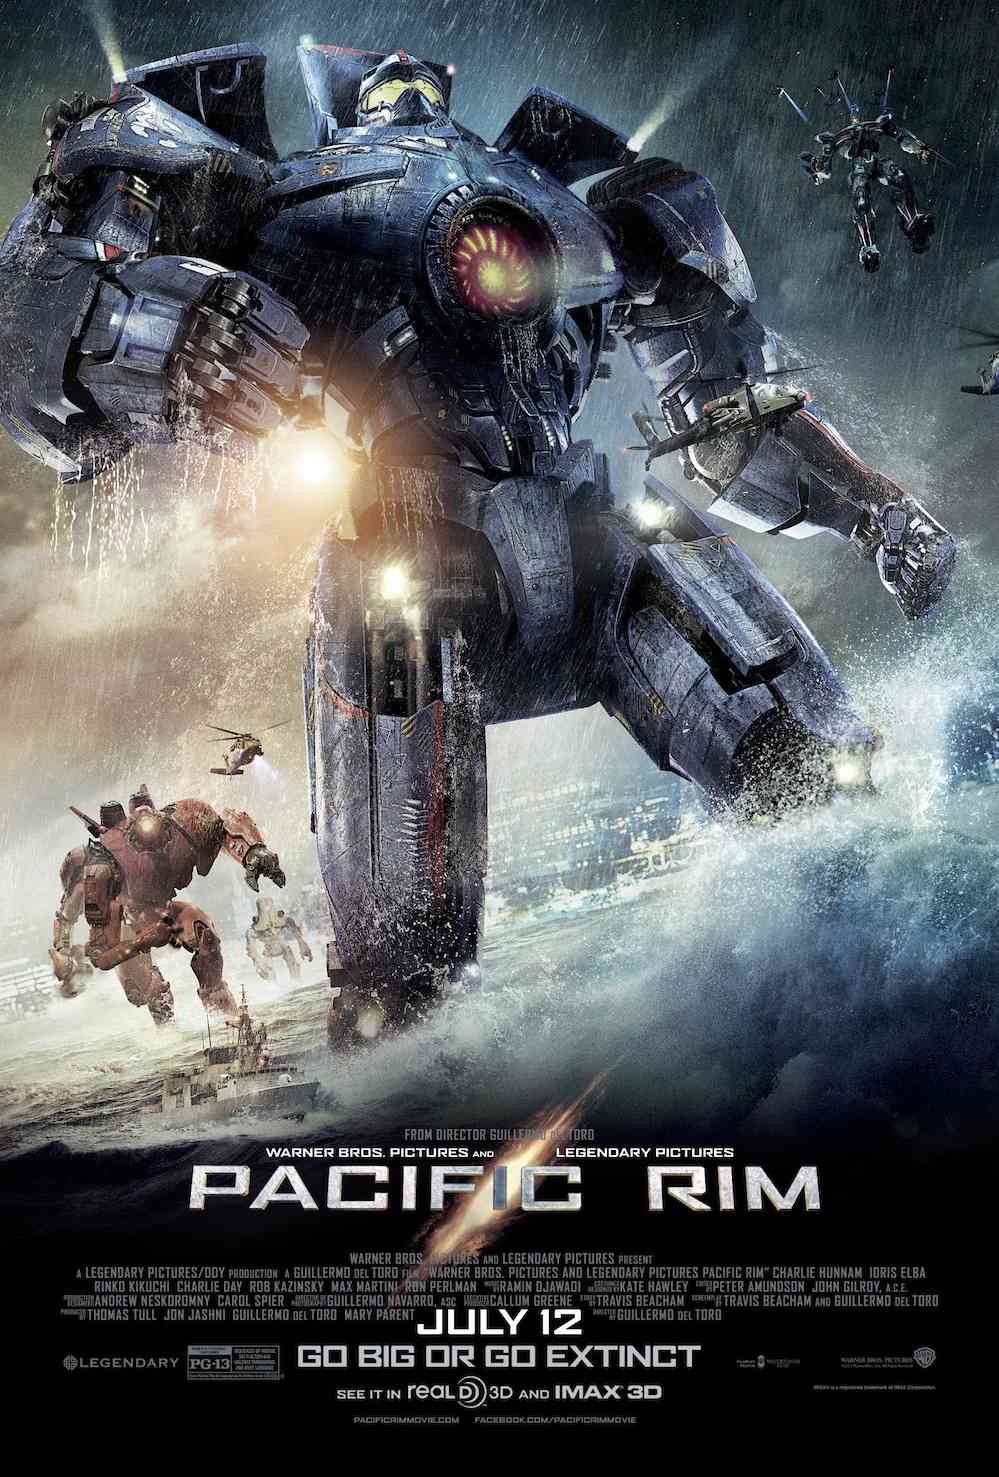 FULL MOVIE: Pacific Rim (2013) [Action]